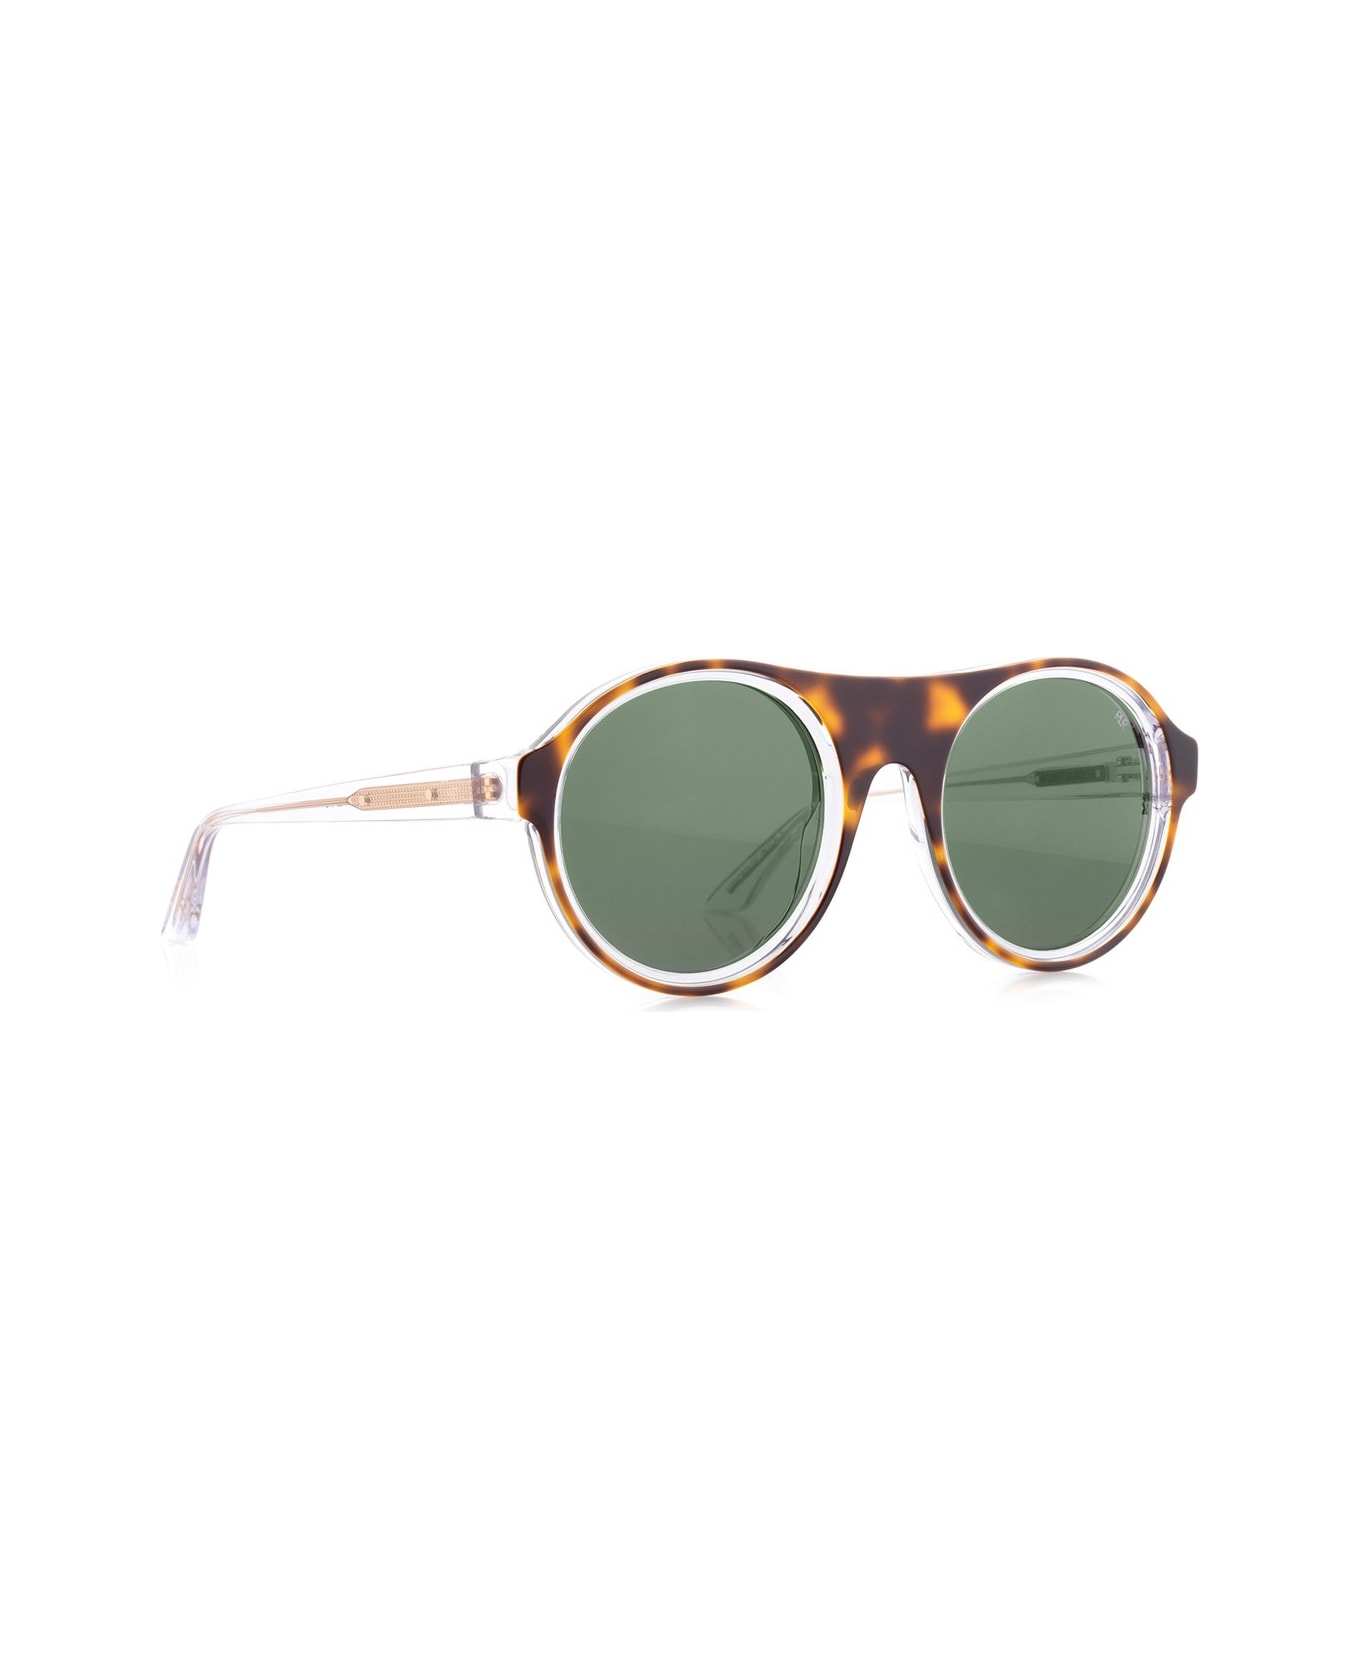 Robert La Roche Rlr S300 Sunglasses - Marrone